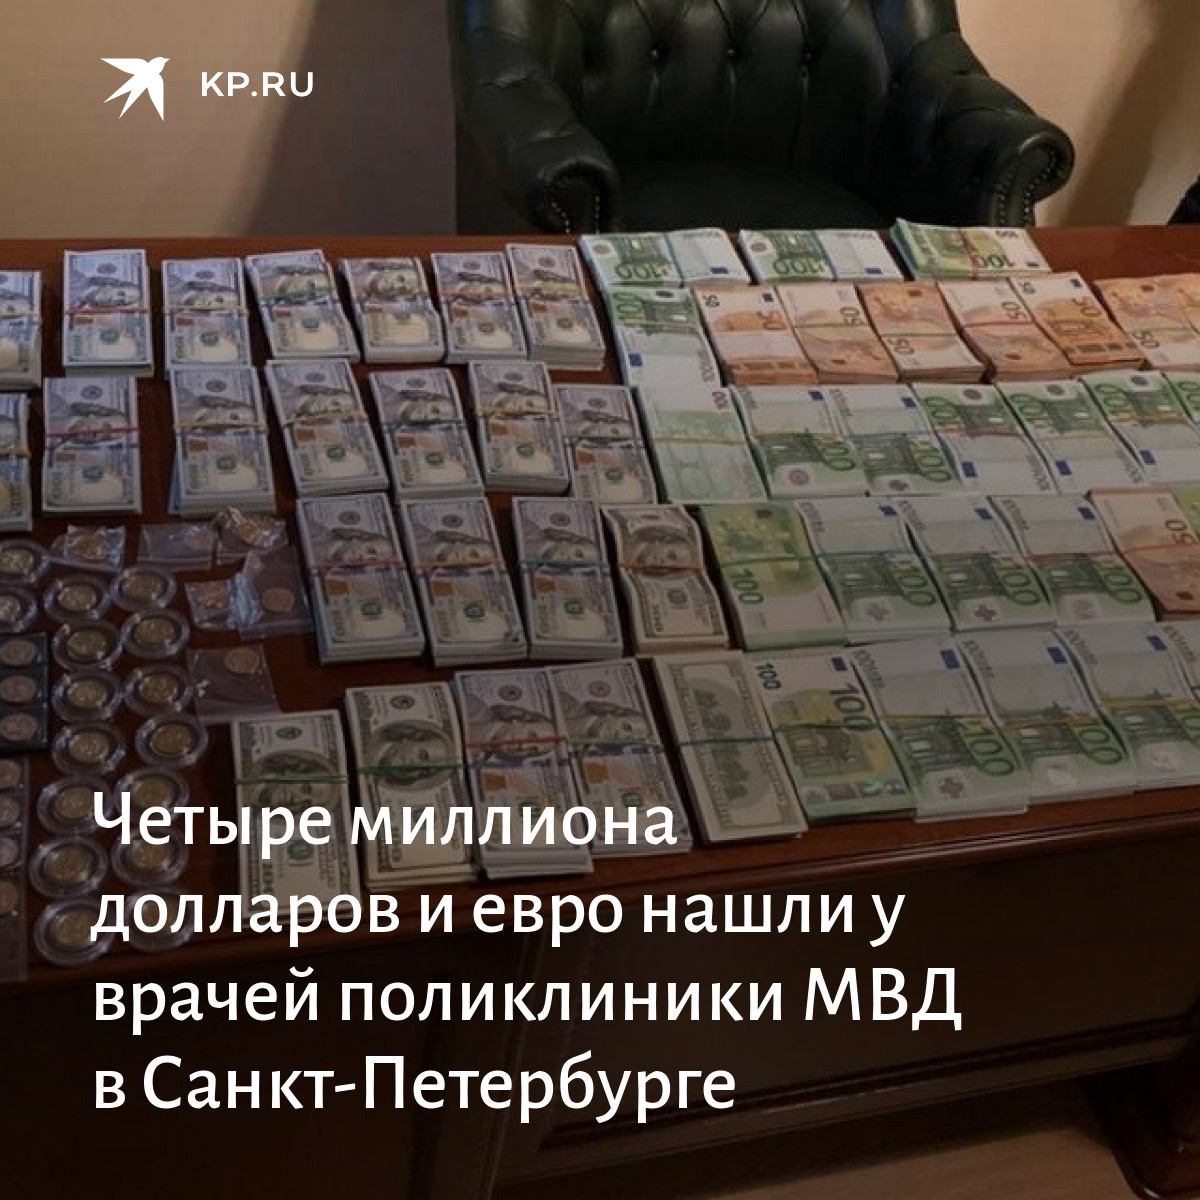 Взять 1000000 рублей. Кредит на 1000000 миллионов долларов. 1000000 Рублей на открытие бизнеса. Кредит 1000000 рублей наличными. Как получить миллион.